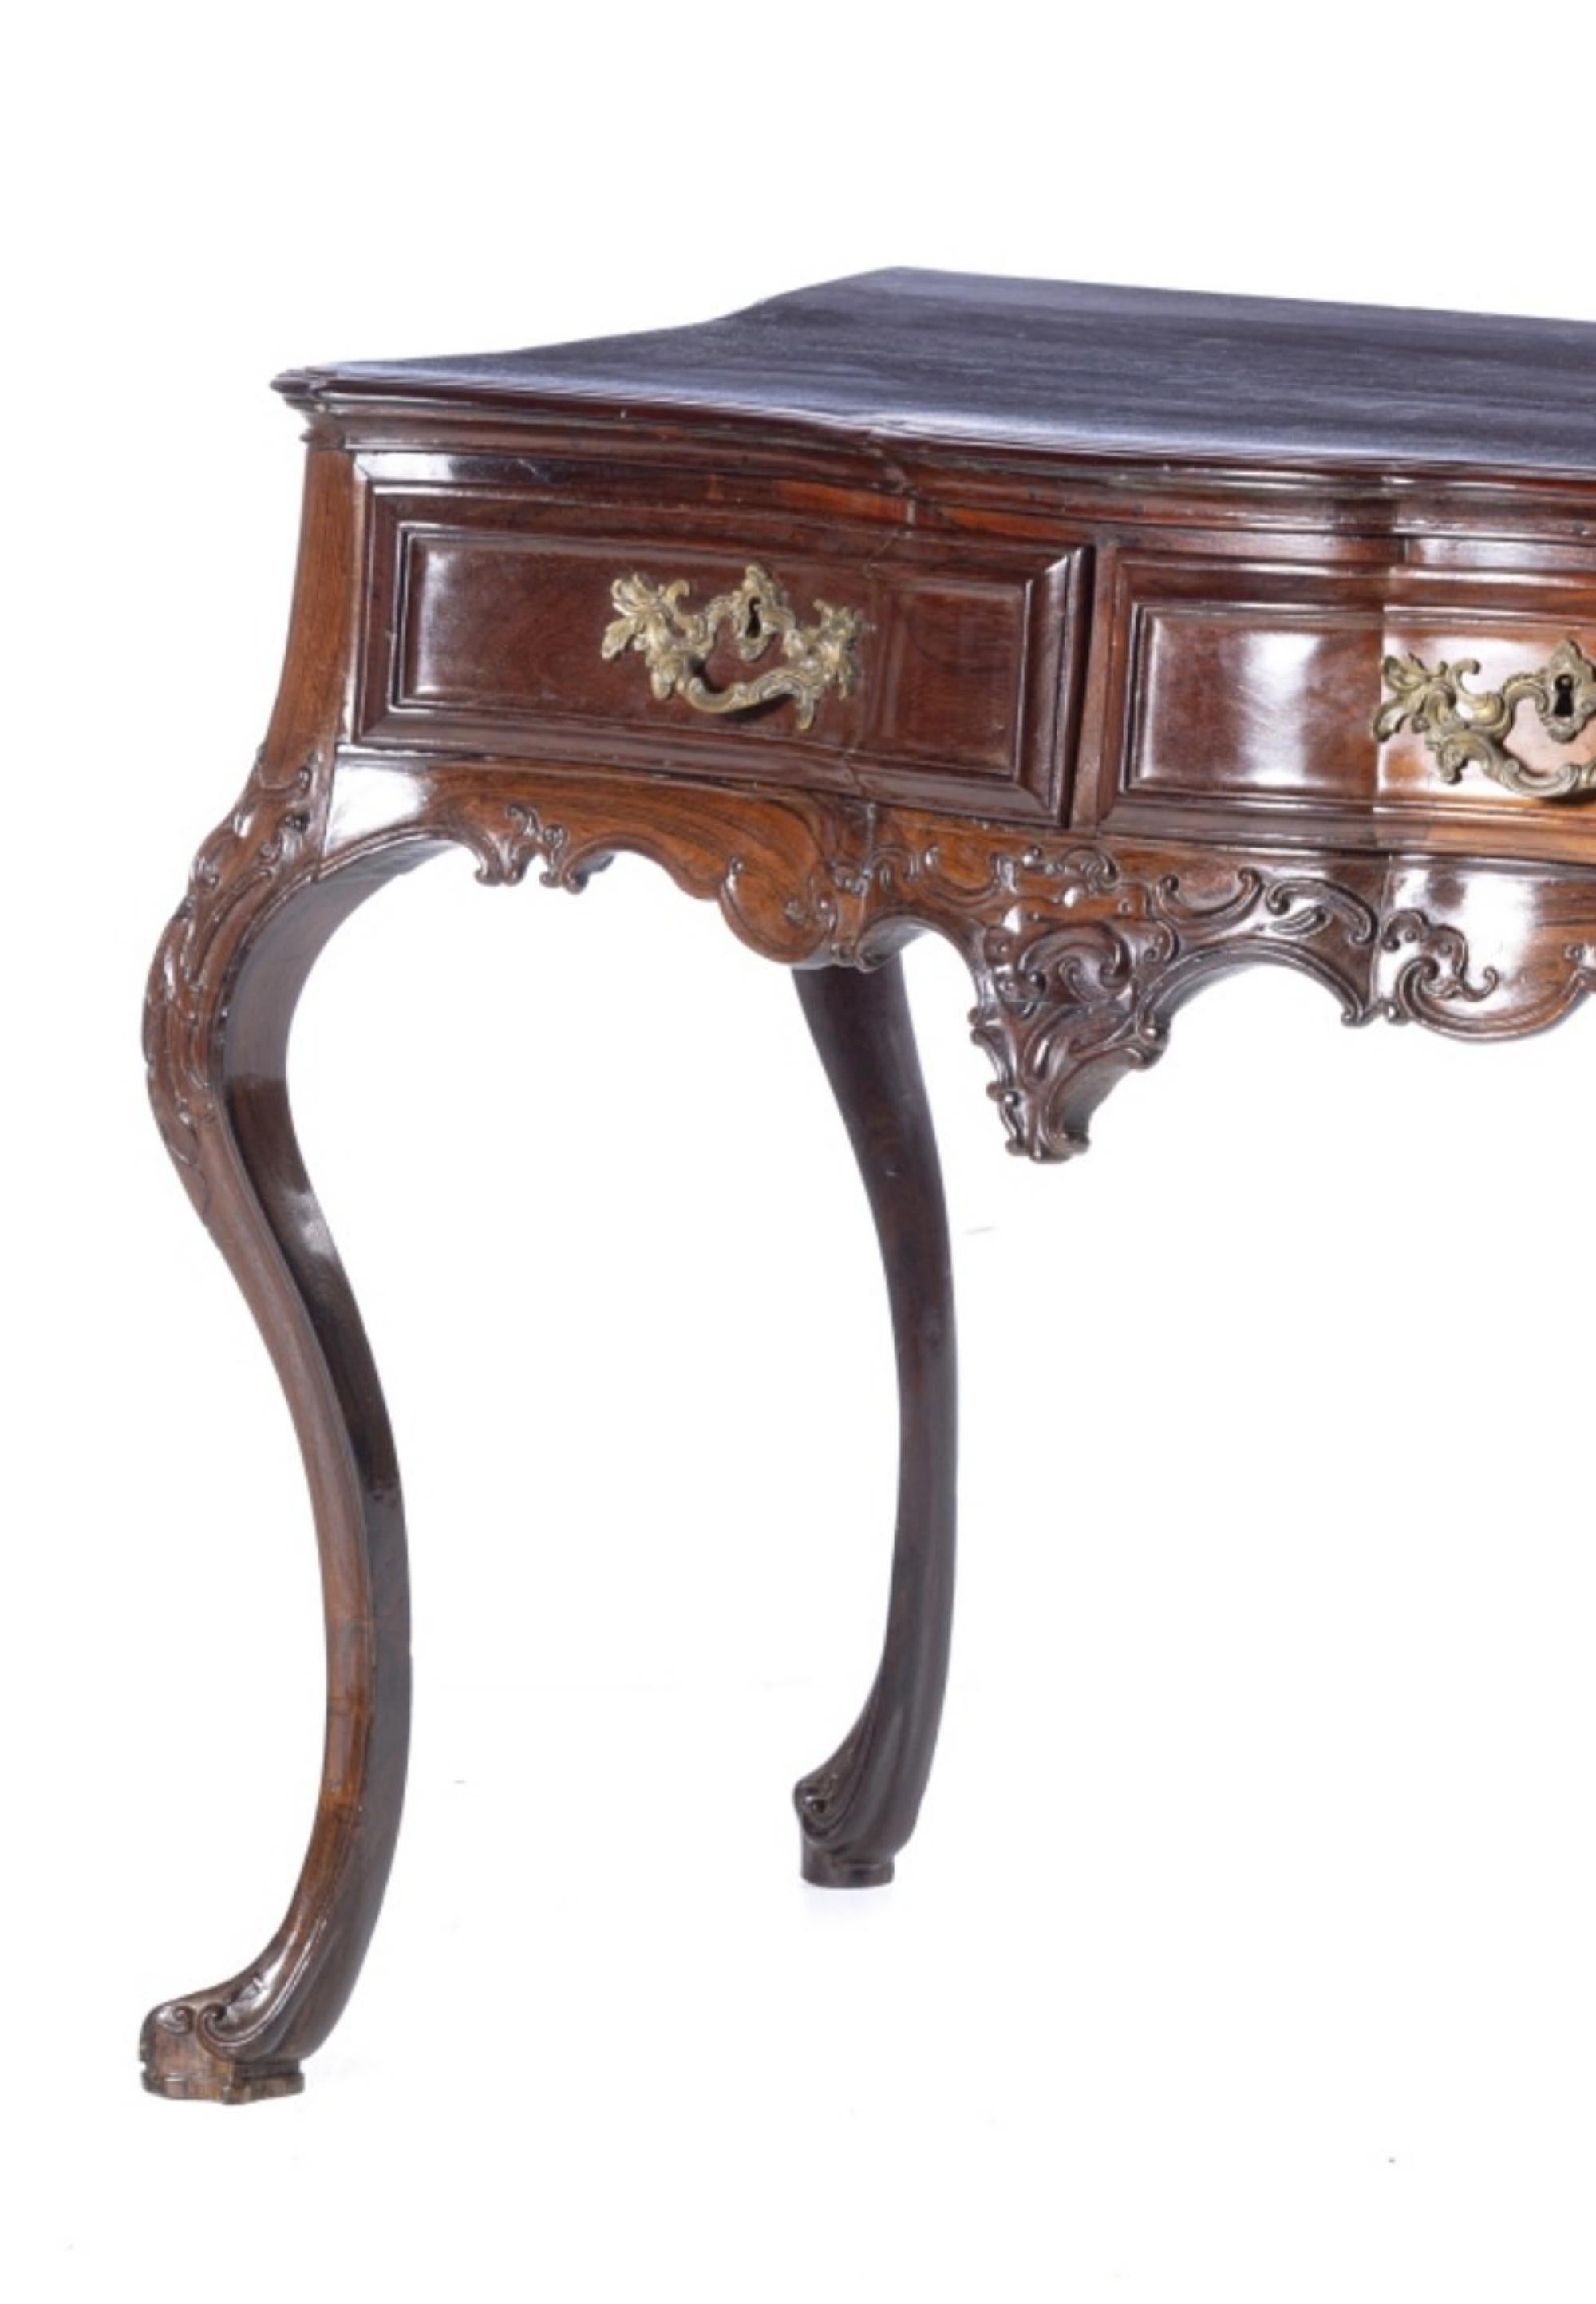 IMPORTANTE TABLE D'APPUI PORTUGAISE D. JOSÉ 18e siècle

en bois de rose avec deux tiroirs. Jupes découpées décorées d'éléments sculptés, terminées par des pieds courbes. Quincaillerie en métal.
DIM. : 79 x 104 x 55 cm.
bon état pour l'âge.